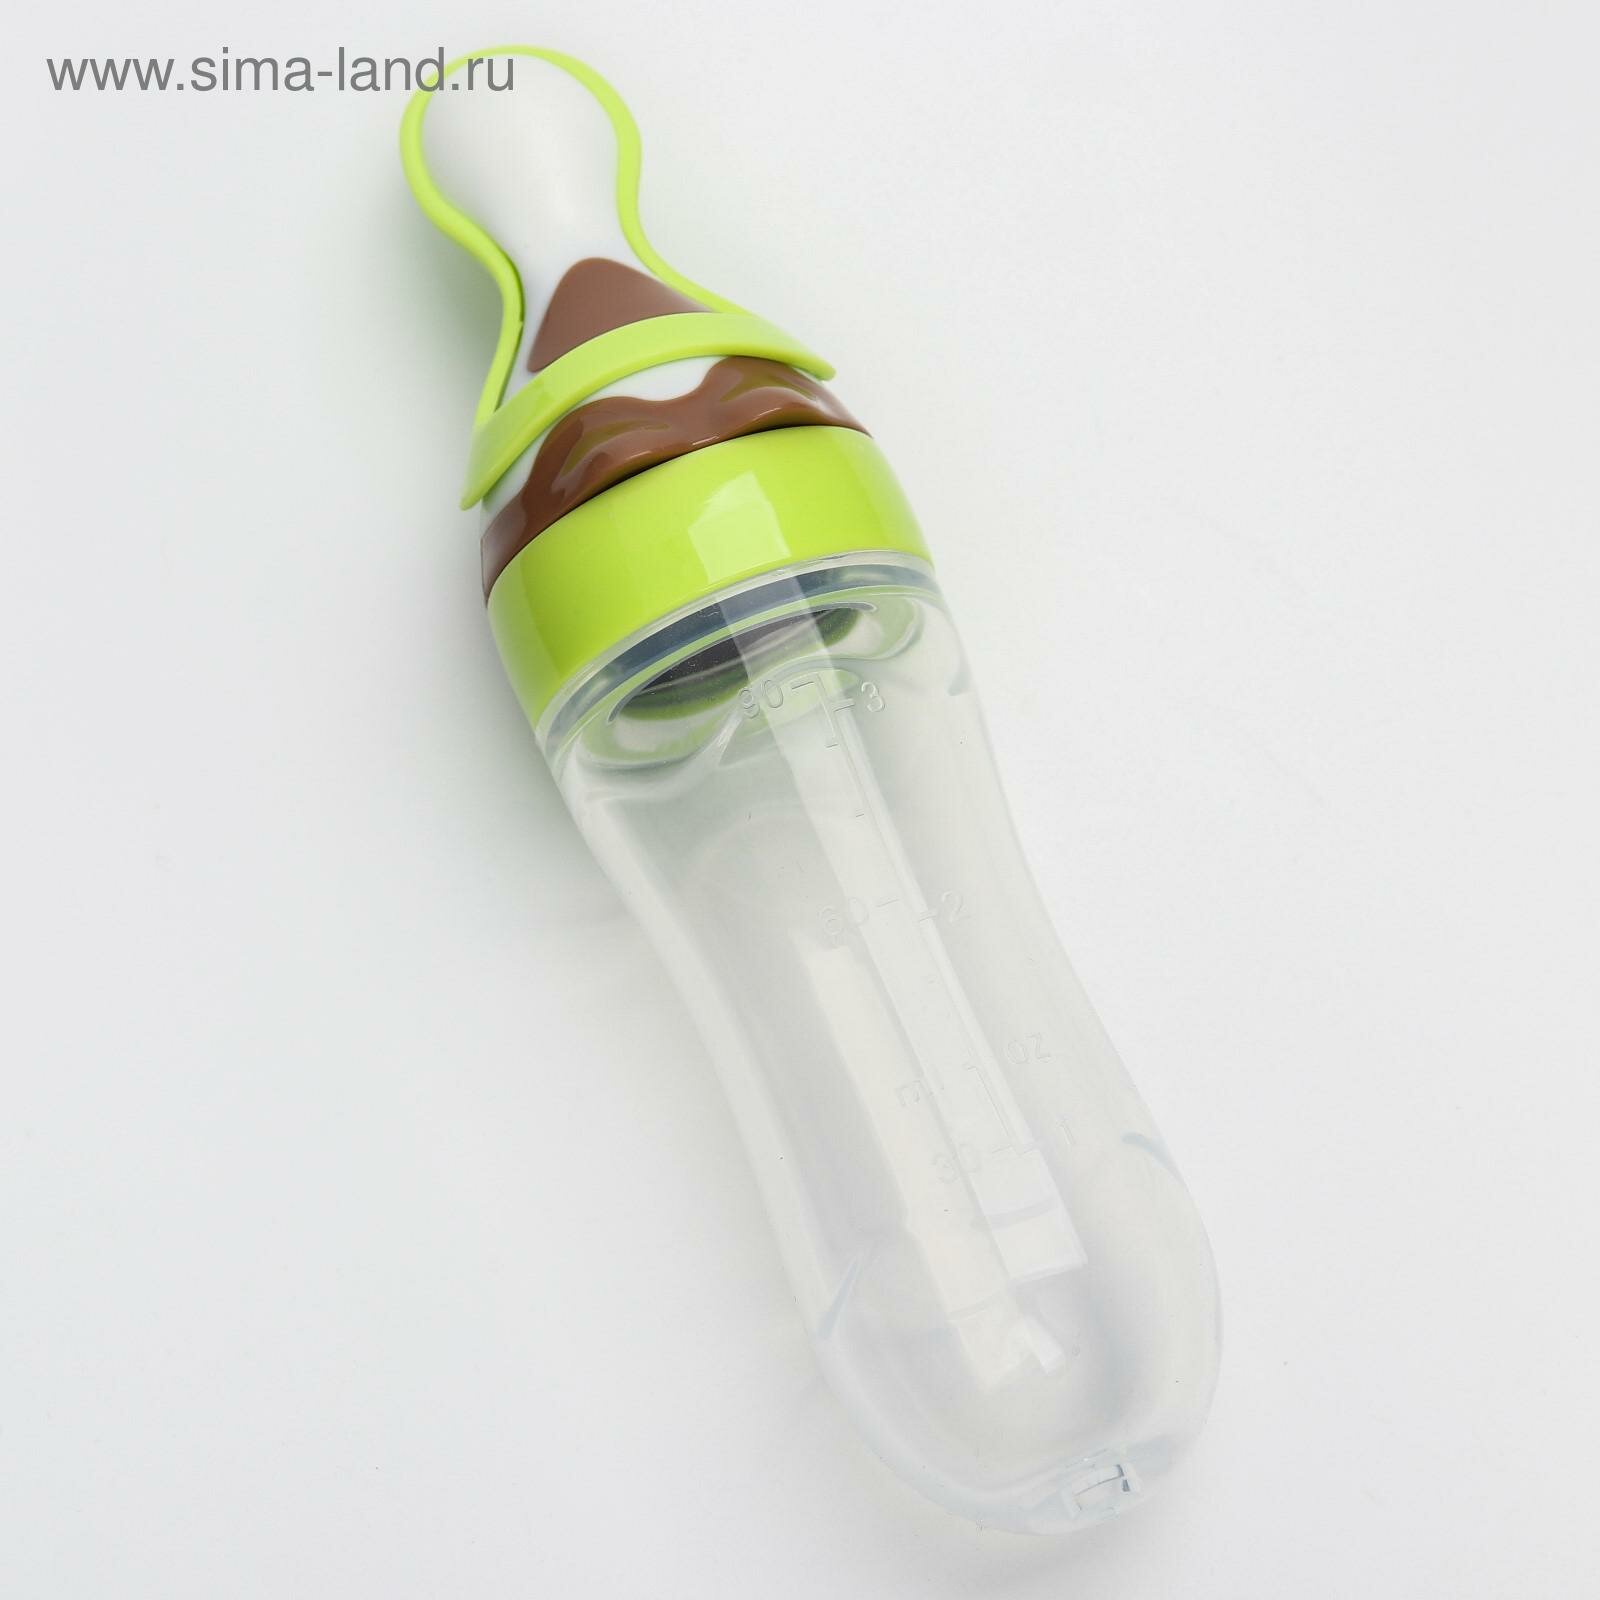 Бутылочка для кормления, силиконовая, с ложкой, от 5 мес, 90 мл, цвет зеленый